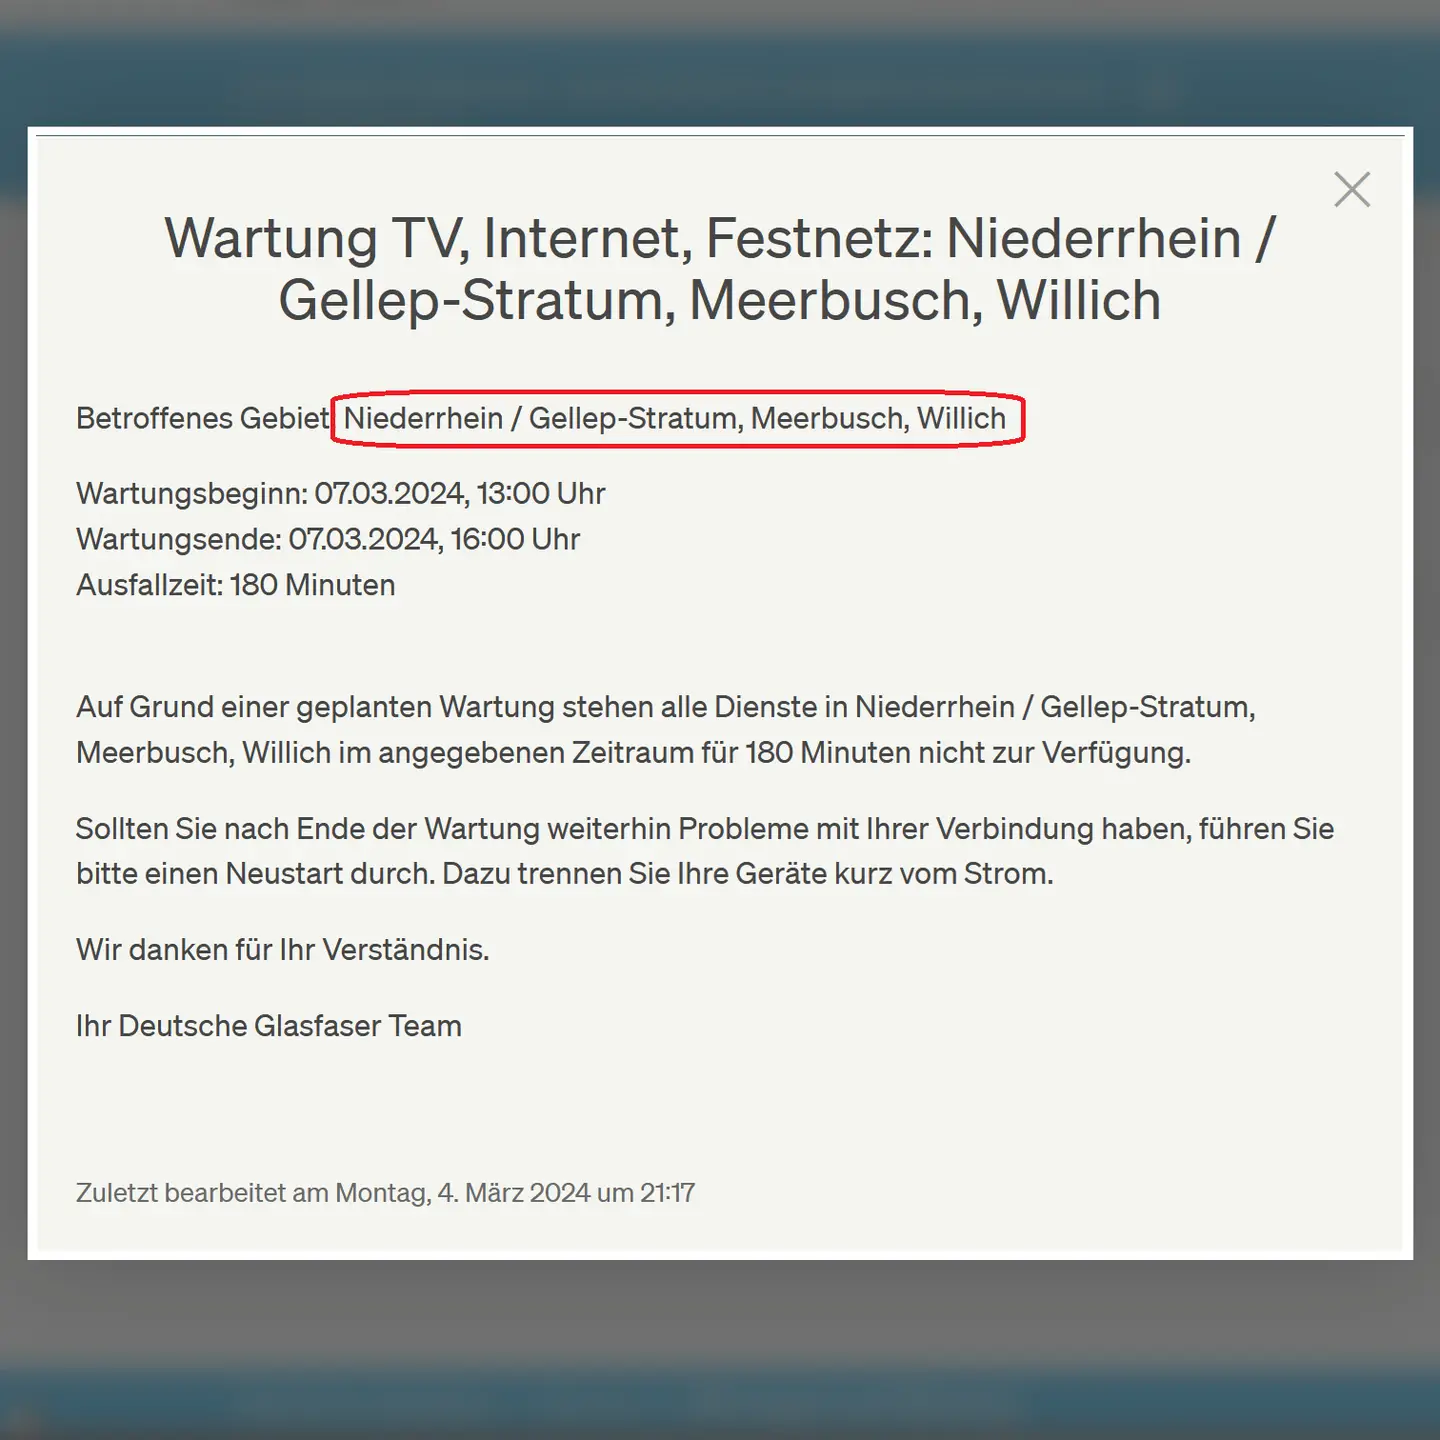 Bild mit Text-Info zur Wartung im Glasfasernetz Deutsche Glasfaser